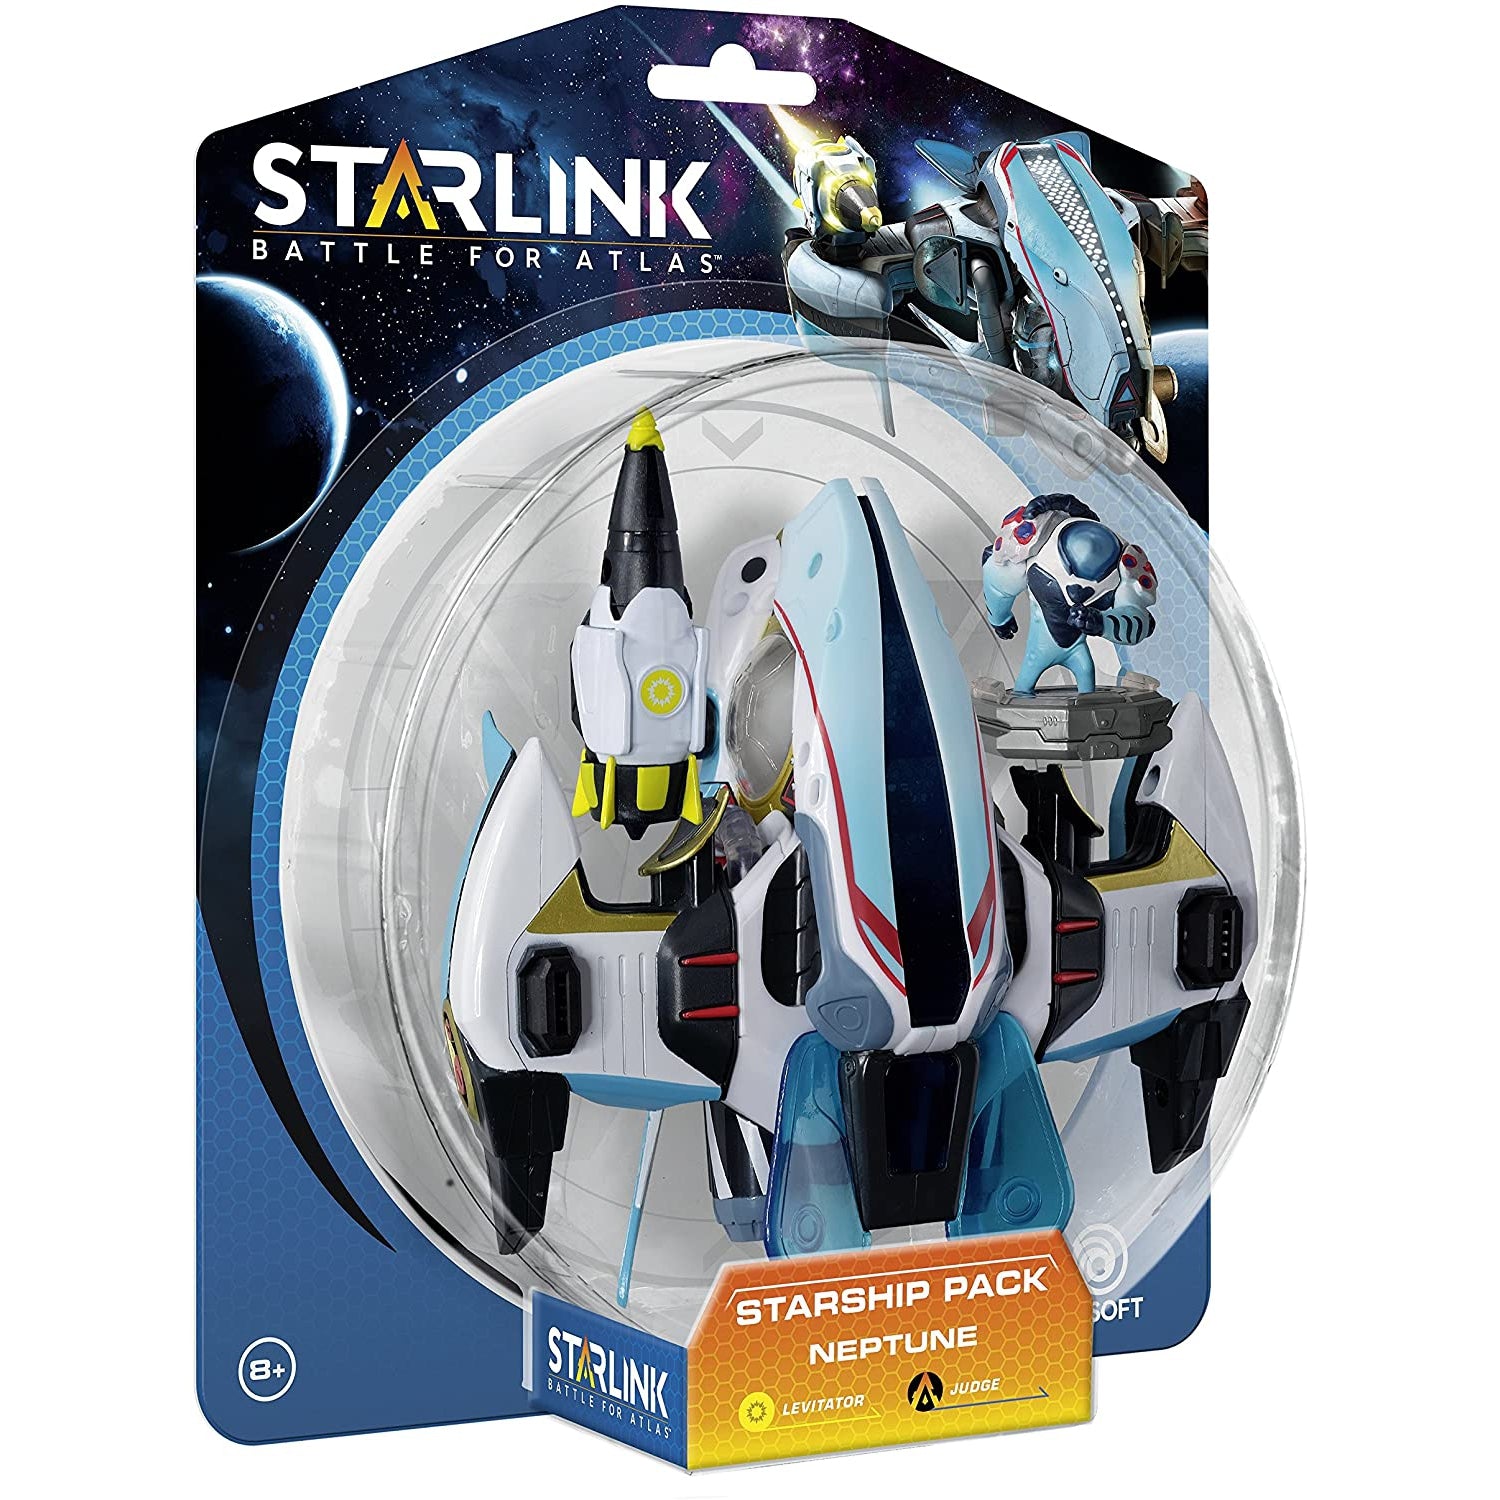 Starlink Battle For Atlas Starship Pack Neptune